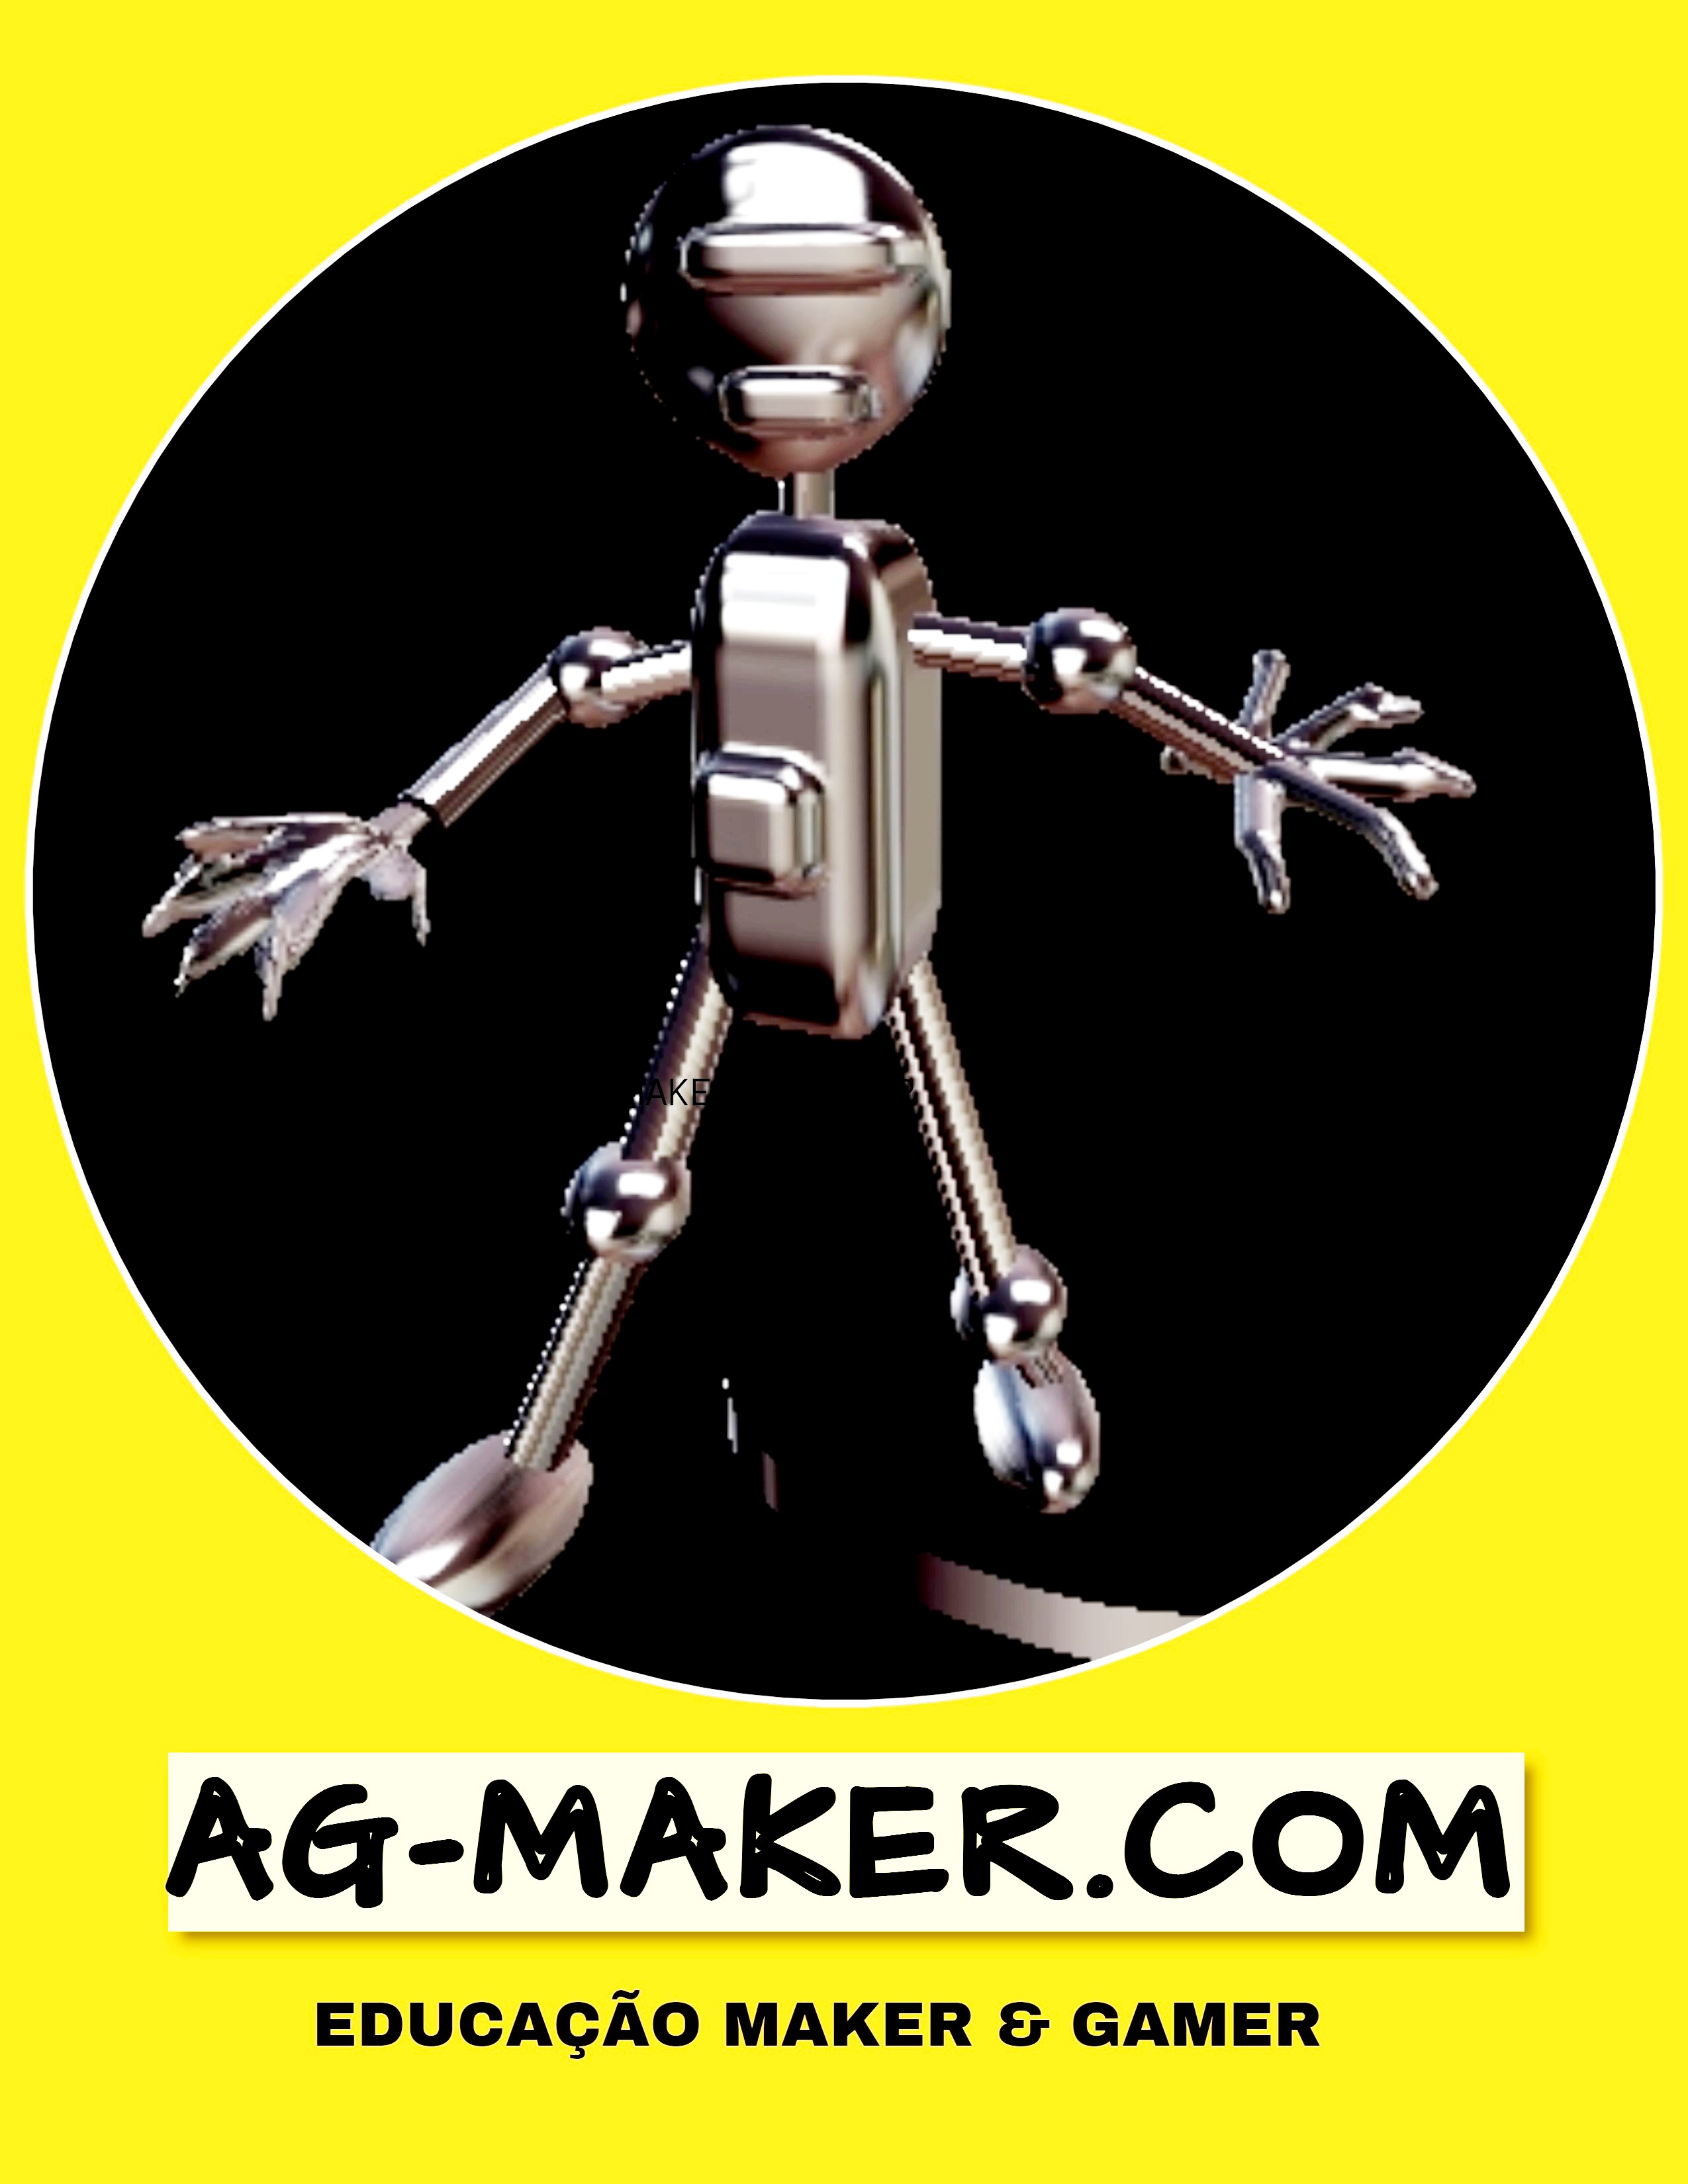 AG-MAKER.COM